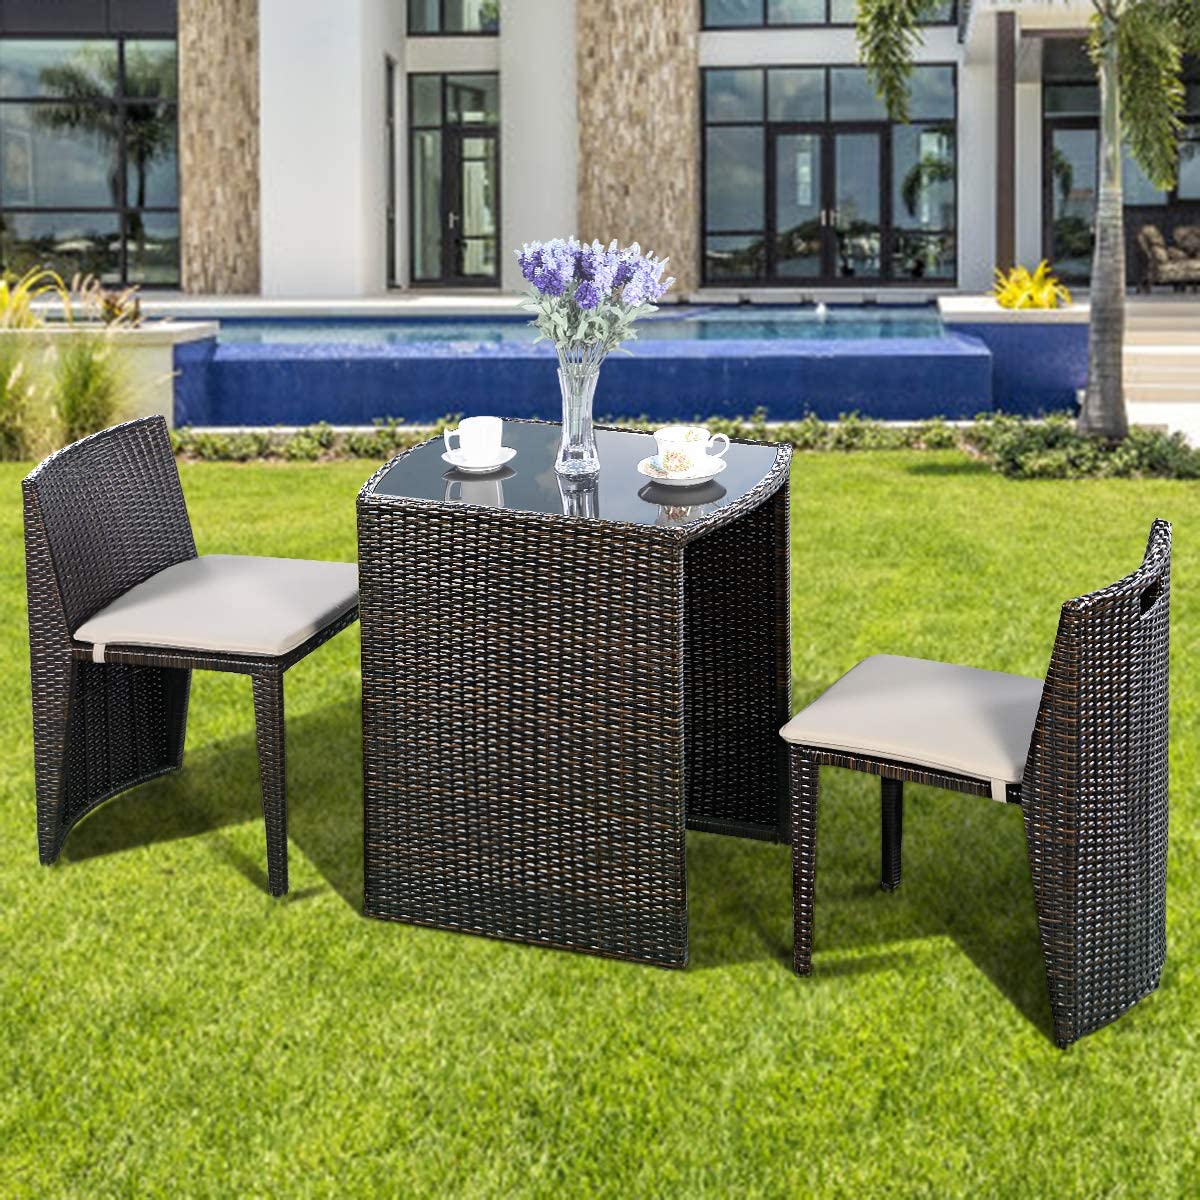 Giantex 3 PCS Cushioned Outdoor Wicker Garden Lawn Sofa Furniture (Brown)